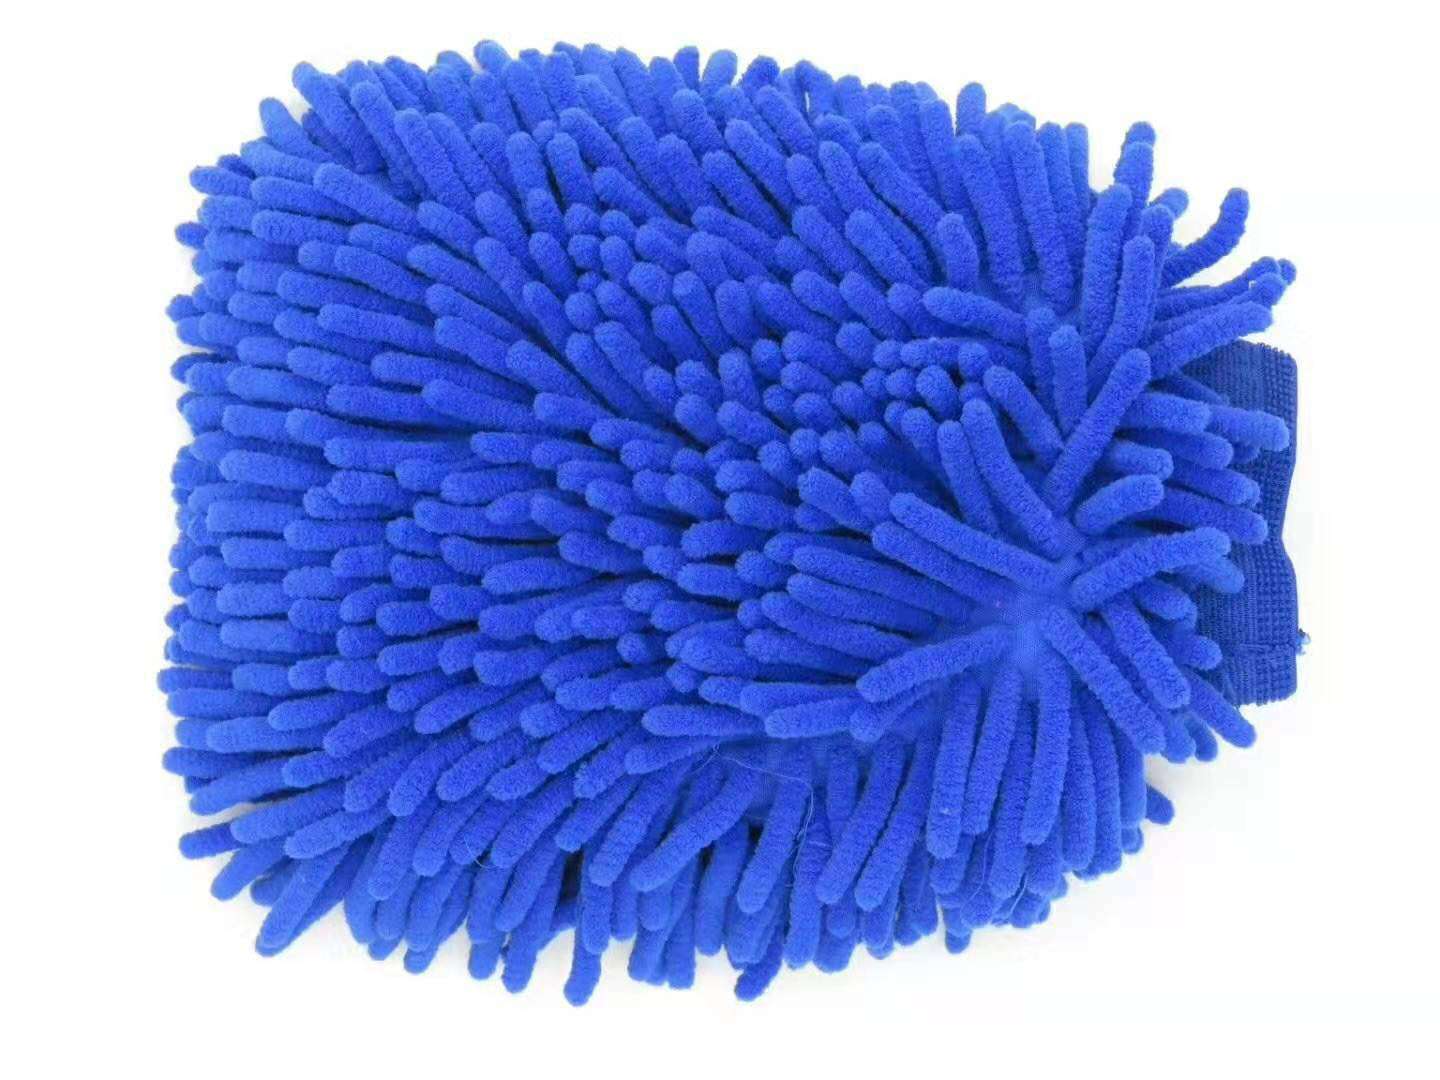 Voiture simple face Double face Chenille gants voiture nettoyage tissu voiture lavage gants fournitures de nettoyage lavage de voiture: Bleu